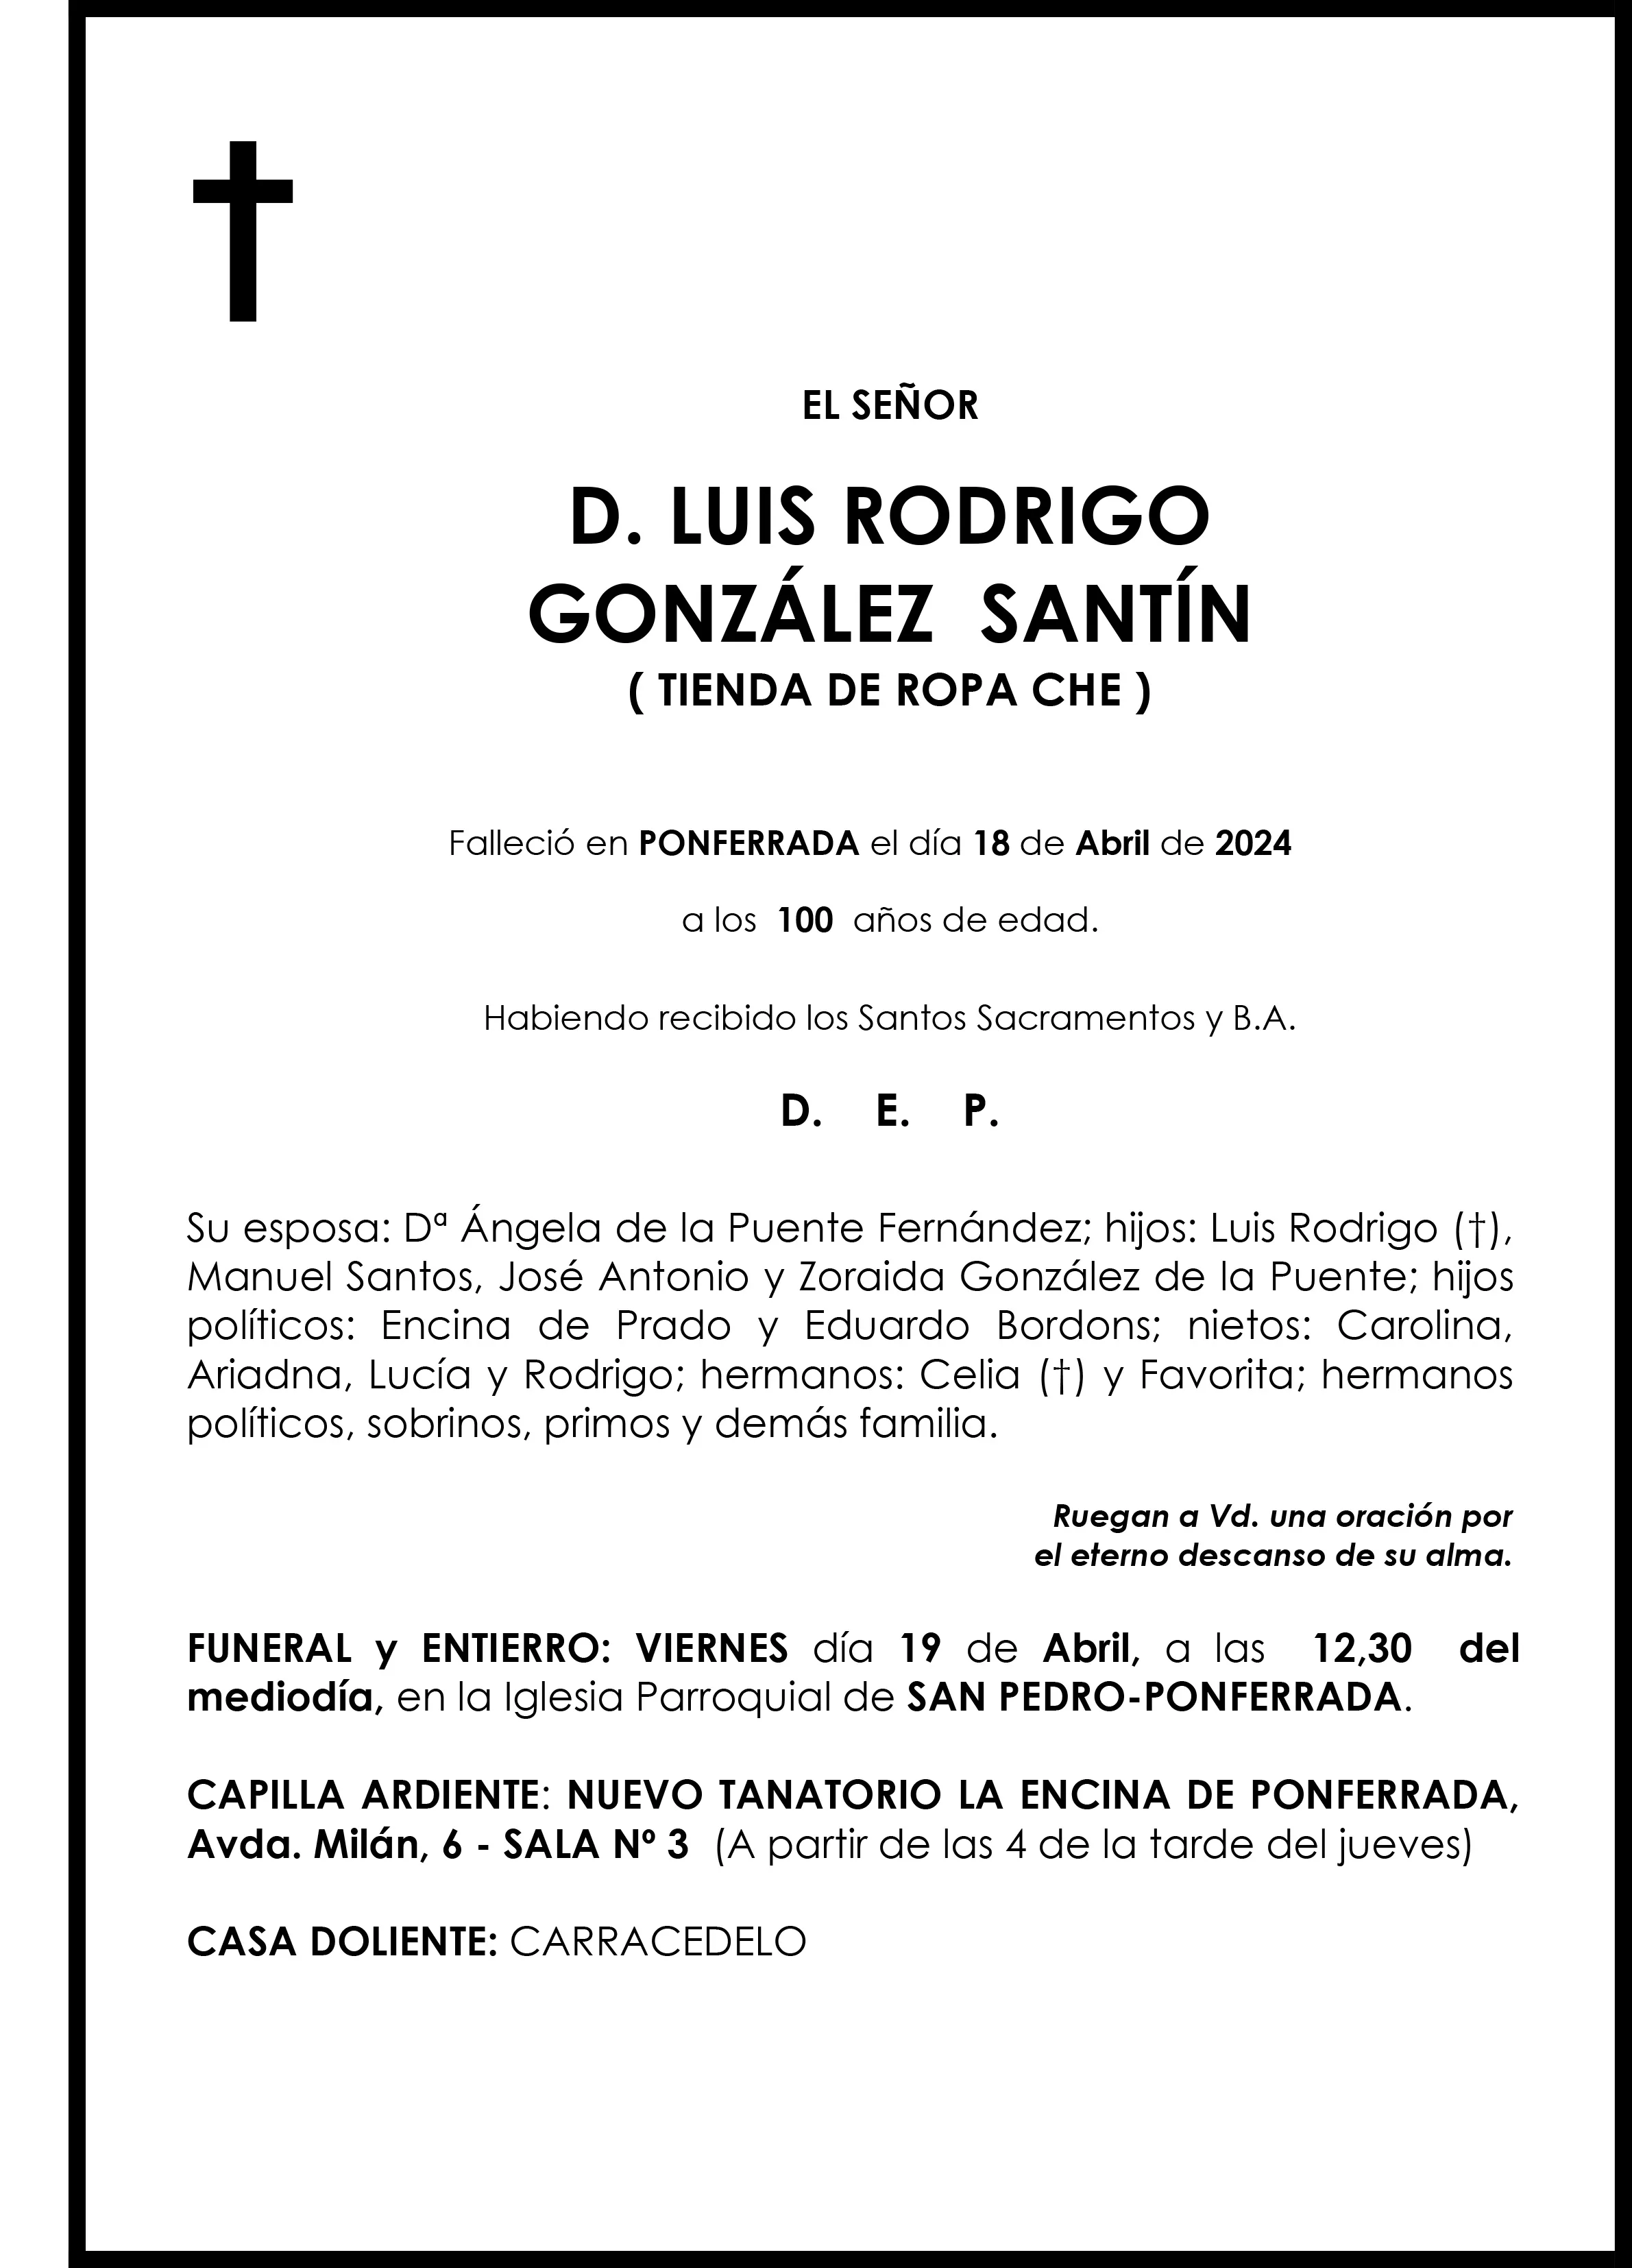 LUIS RODRIGO GONZALEZ SANTIN